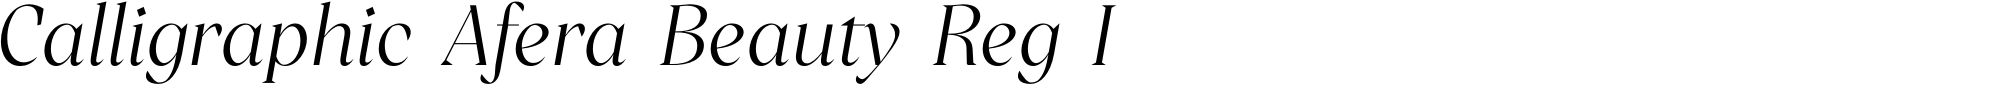 Calligraphic Afera Beauty Reg I image